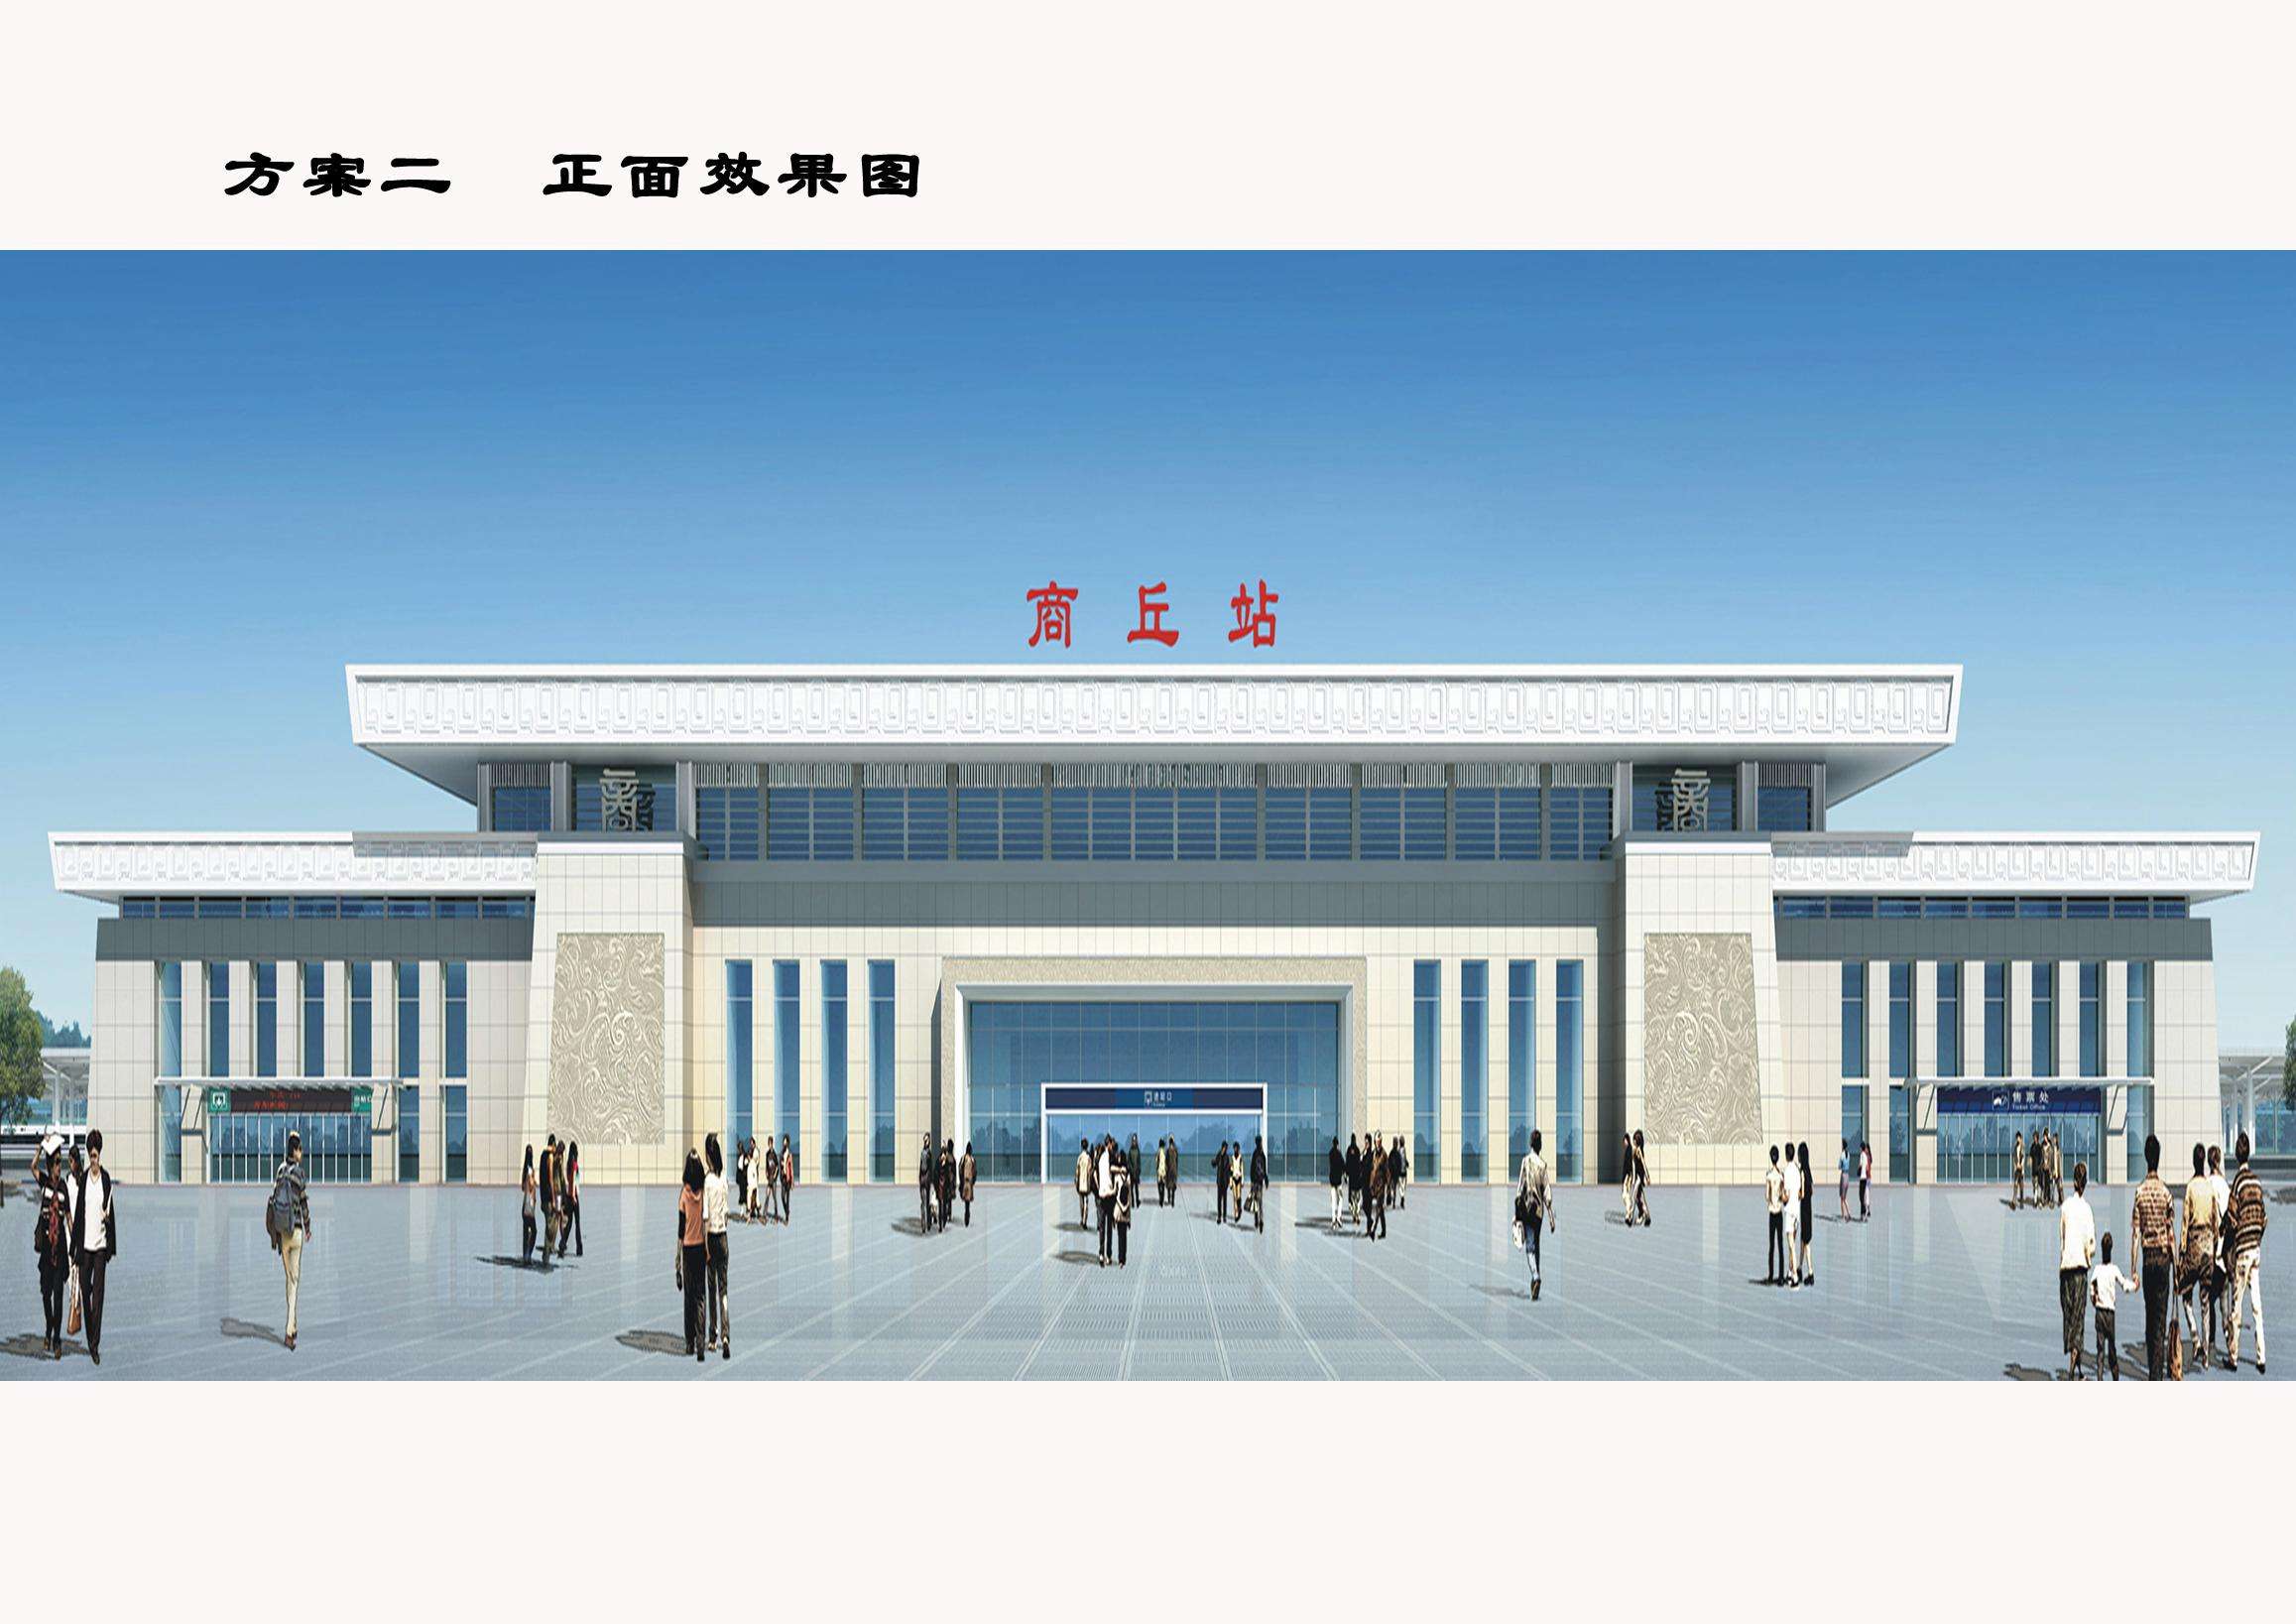 河南省平顶山市郑万高铁站周边区域控制性详细规划及城市设计方案